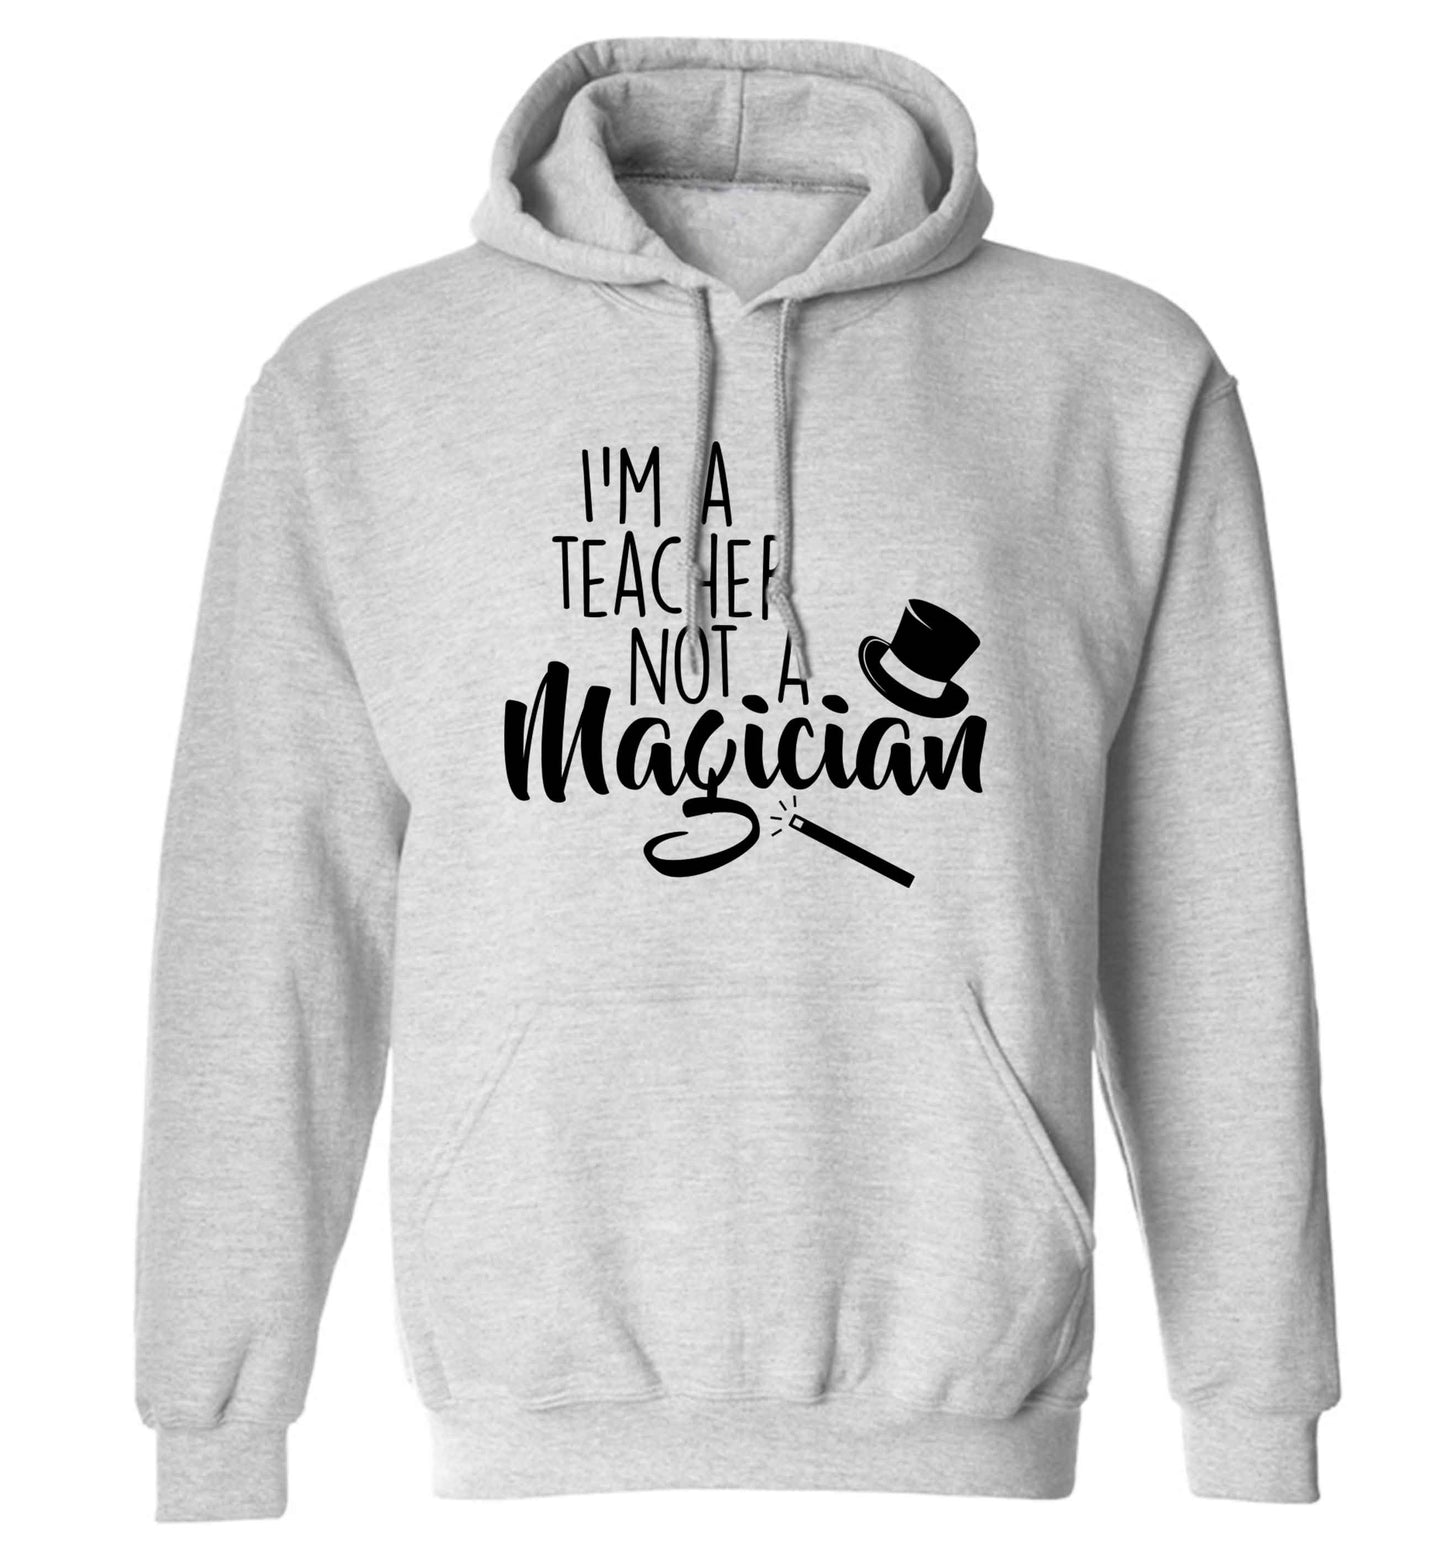 I'm a teacher not a magician adults unisex grey hoodie 2XL